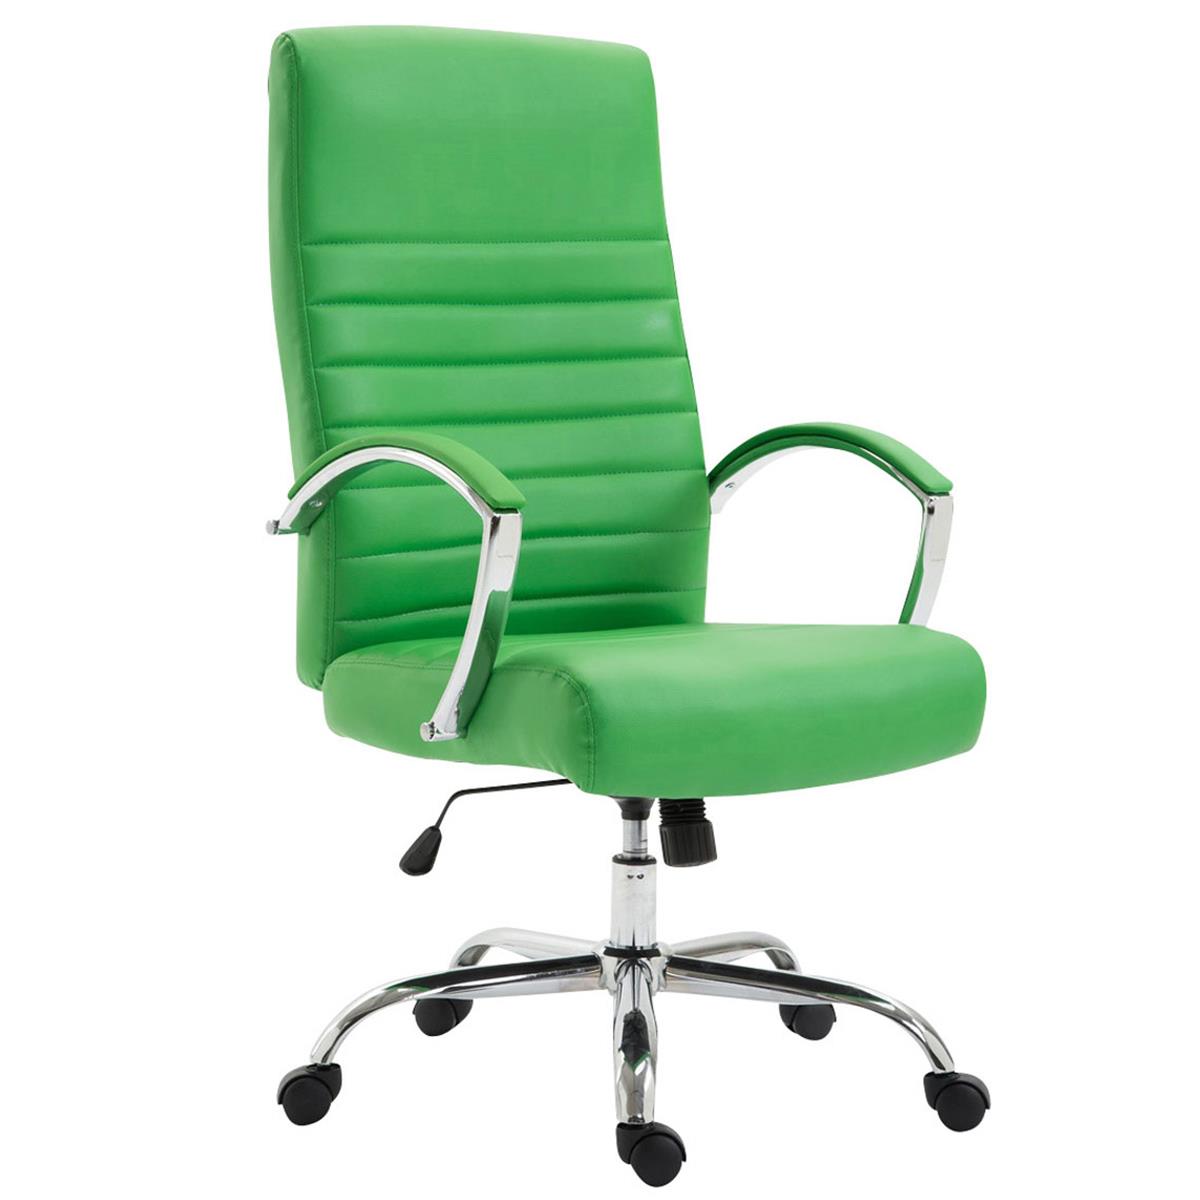 Sedia da Ufficio VANCOUVER, Design Moderno con Cuciture a Vista, in Pelle, color Verde